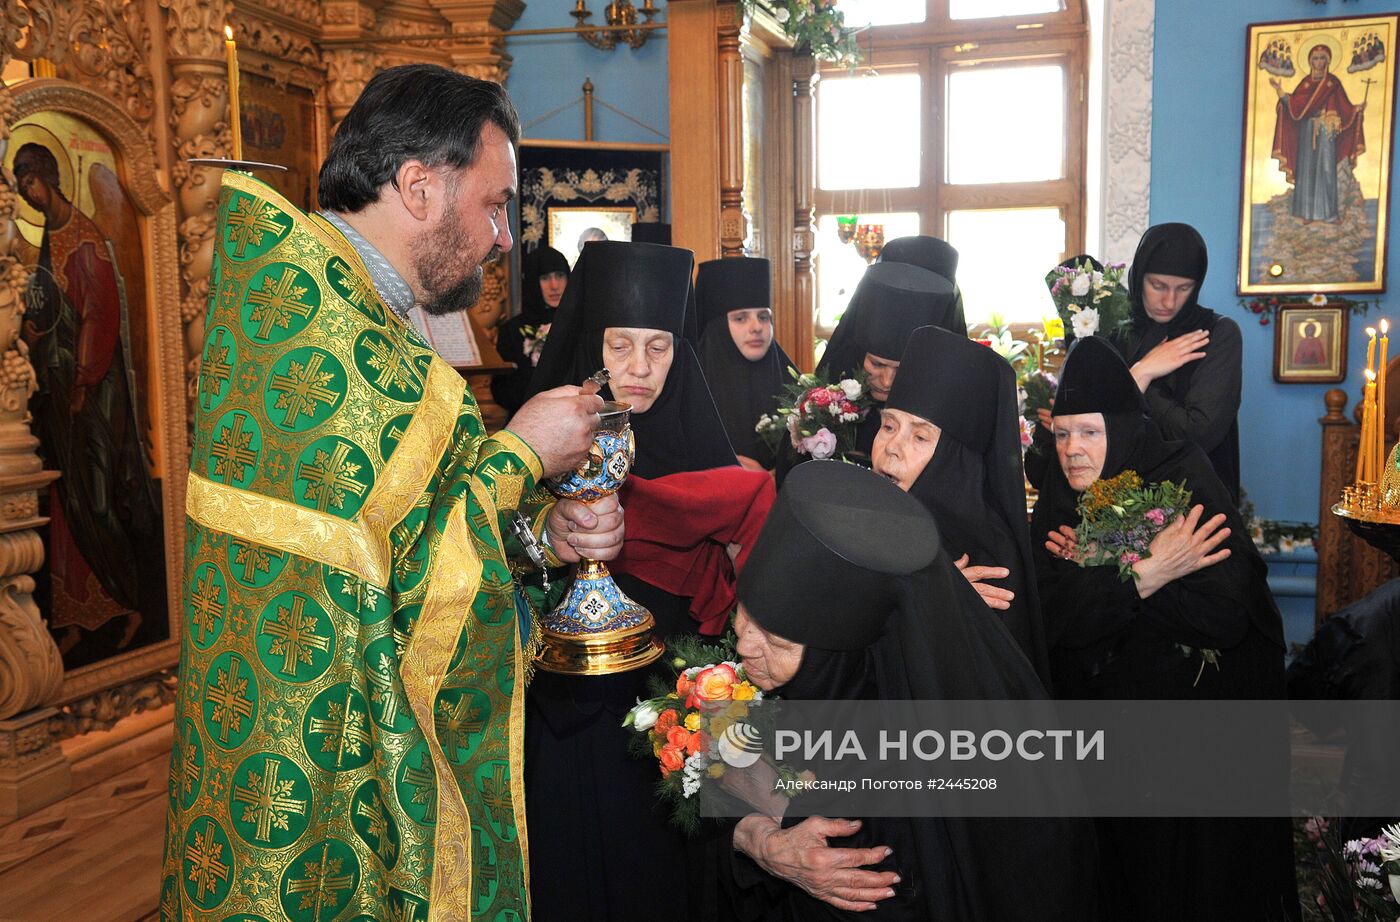 Празднование Троицы в Ростове-на-Дону